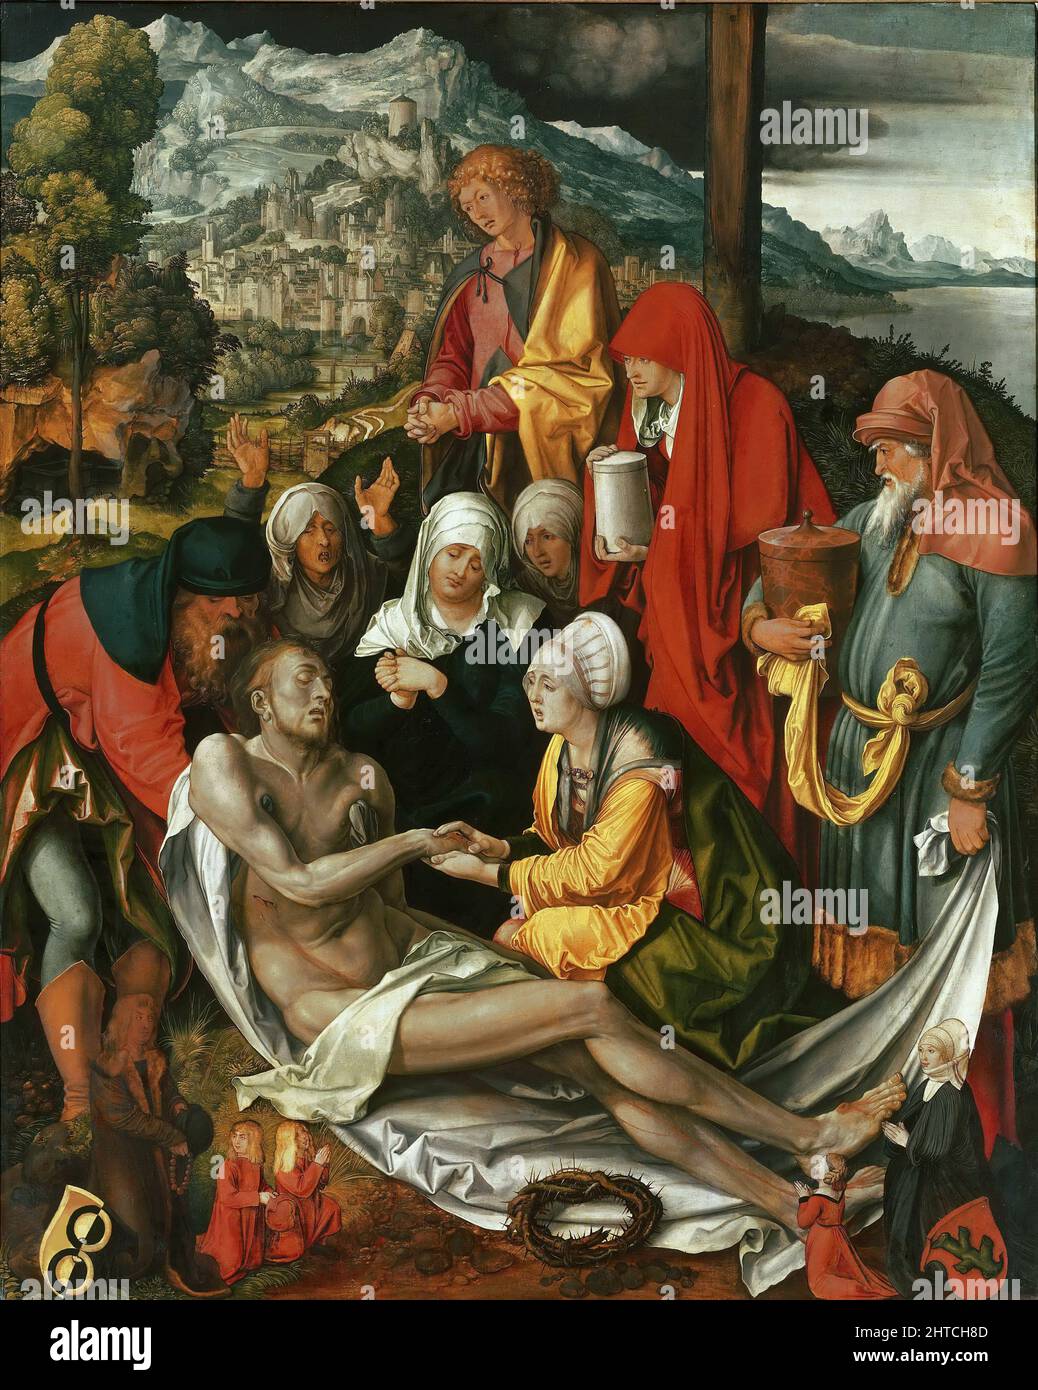 La Lamentación de Cristo (la Lamentación de Glimm), c. 1500. Encontrado en la Colección del Alte Pinakothek, Munich. Foto de stock